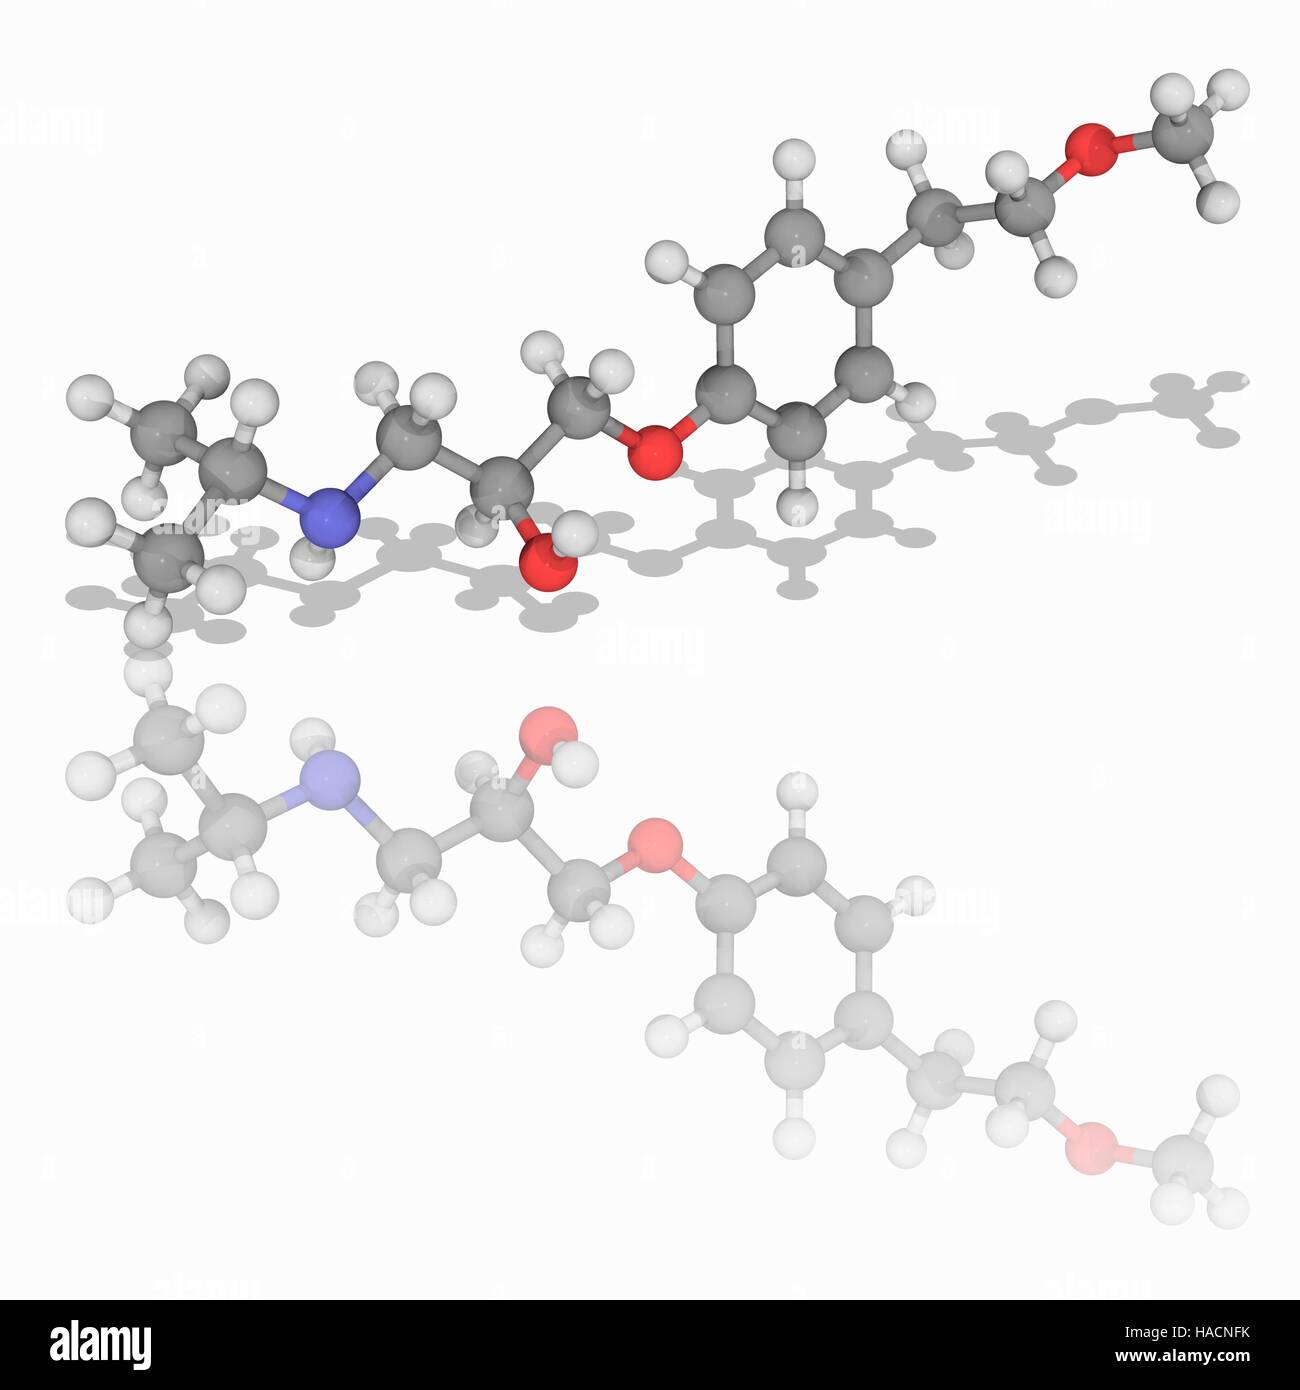 Metoprolol. Molekulares Modell des Medikament Metoprolol (C15. H25. N.O3), ein selektiver Beta-1-Rezeptor-Blocker zur Behandlung von verschiedenen Erkrankungen des Herz-Kreislauf-Systems, vor allem Hypertonie (Bluthochdruck). Atome als Kugeln dargestellt werden und sind farblich gekennzeichnet: Kohlenstoff (grau), Wasserstoff (weiß), Stickstoff (blau) und Sauerstoff (rot). Abbildung. Stockfoto